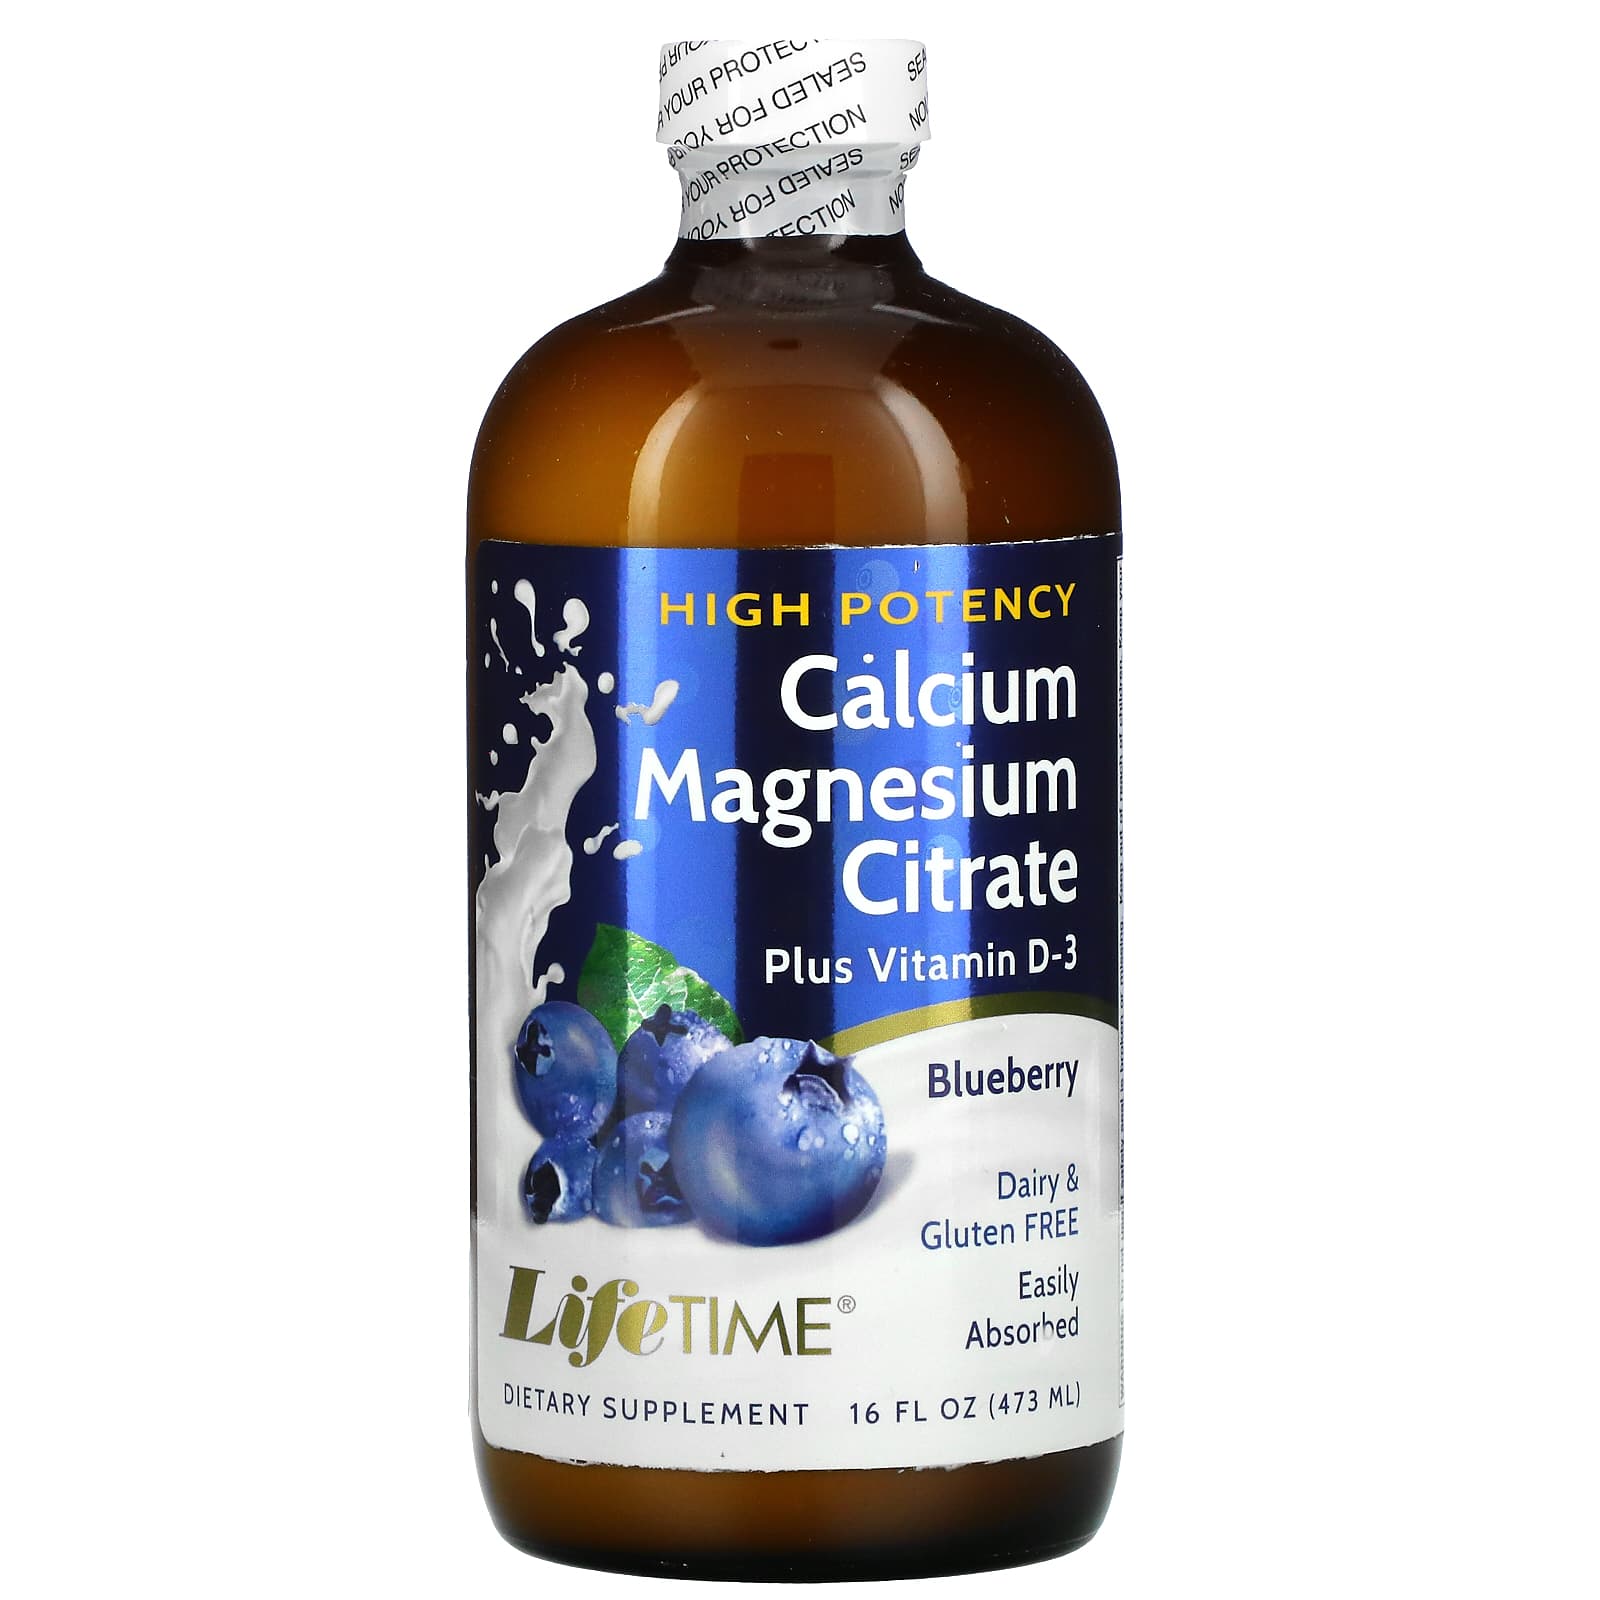 LifeTime Calcium Magnesium Citrate Vitamin Blueberry, 16 fl oz (473